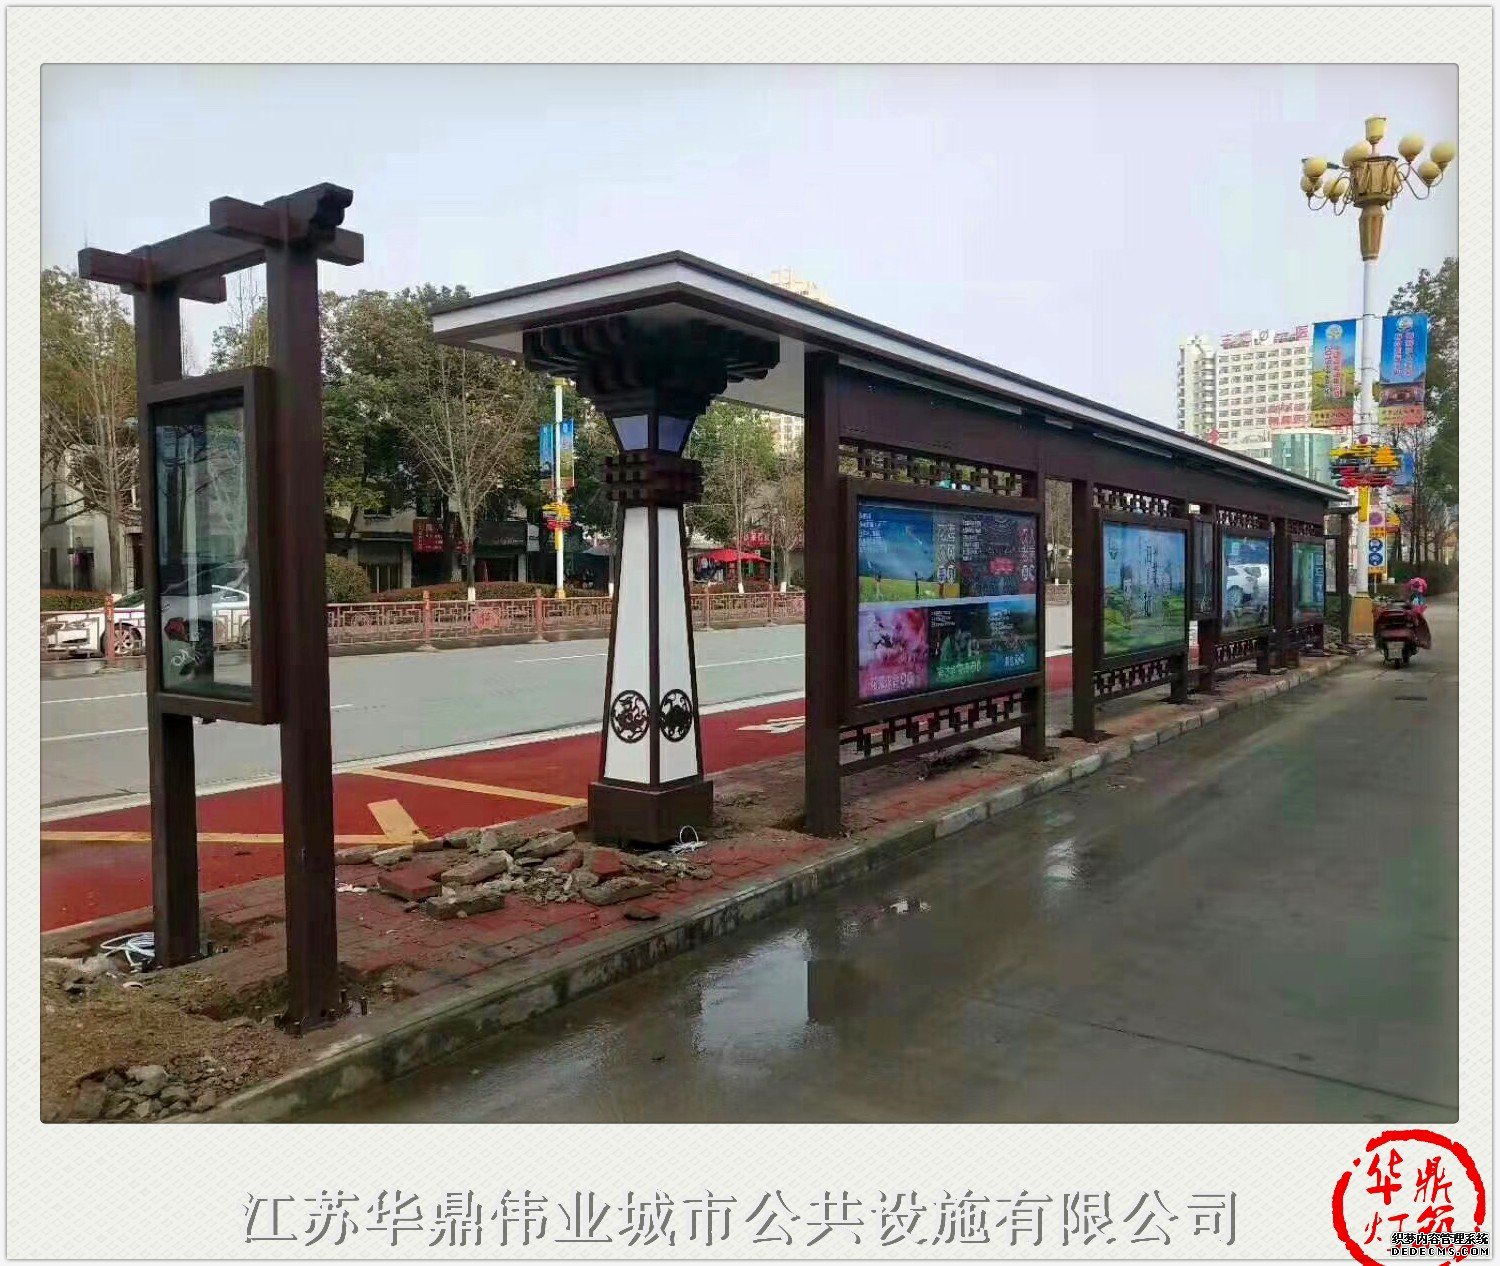 上海公交车候车亭广告良心企业